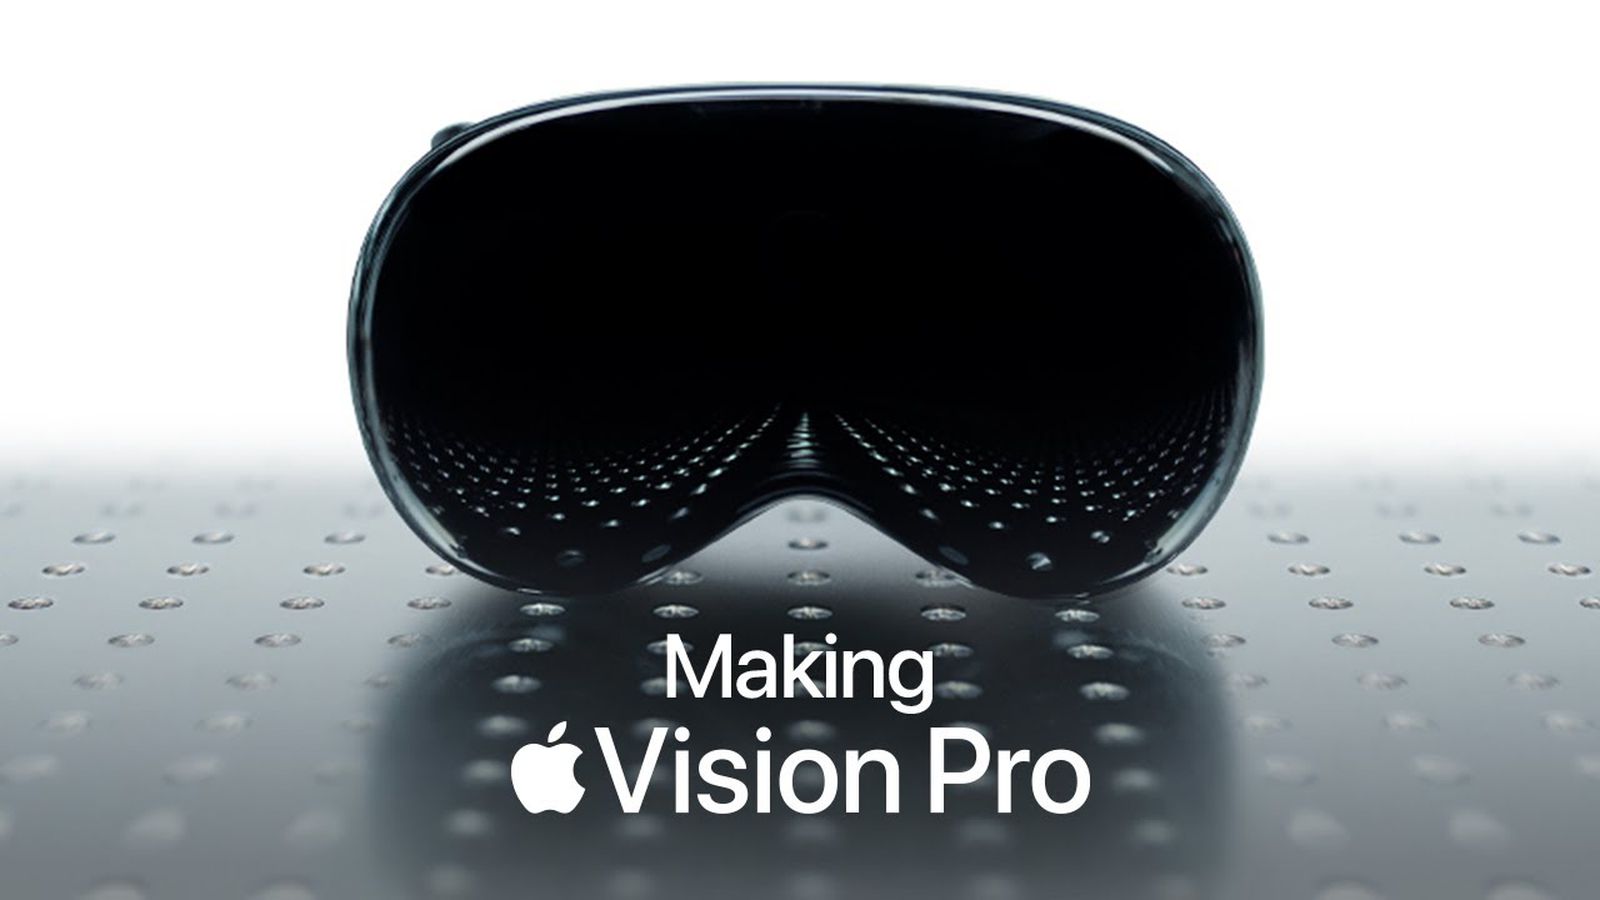 اپل نگاهی پشت صحنه به نحوه ساخت ویژن پرو ارائه می دهد